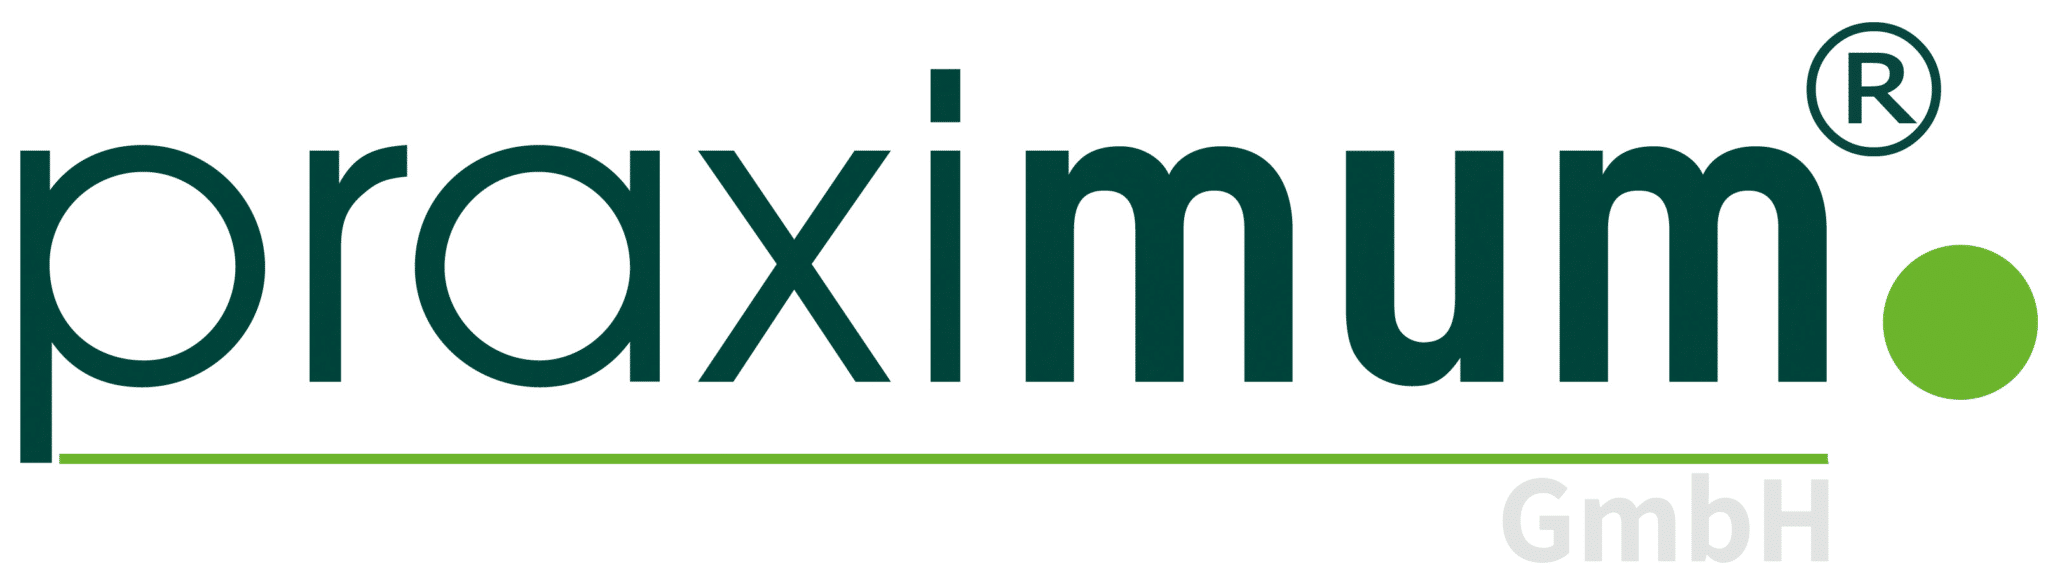 Praximum GmbH - Beratung, Organisation und Marketing für Arztpraxen und andere Heilberufe